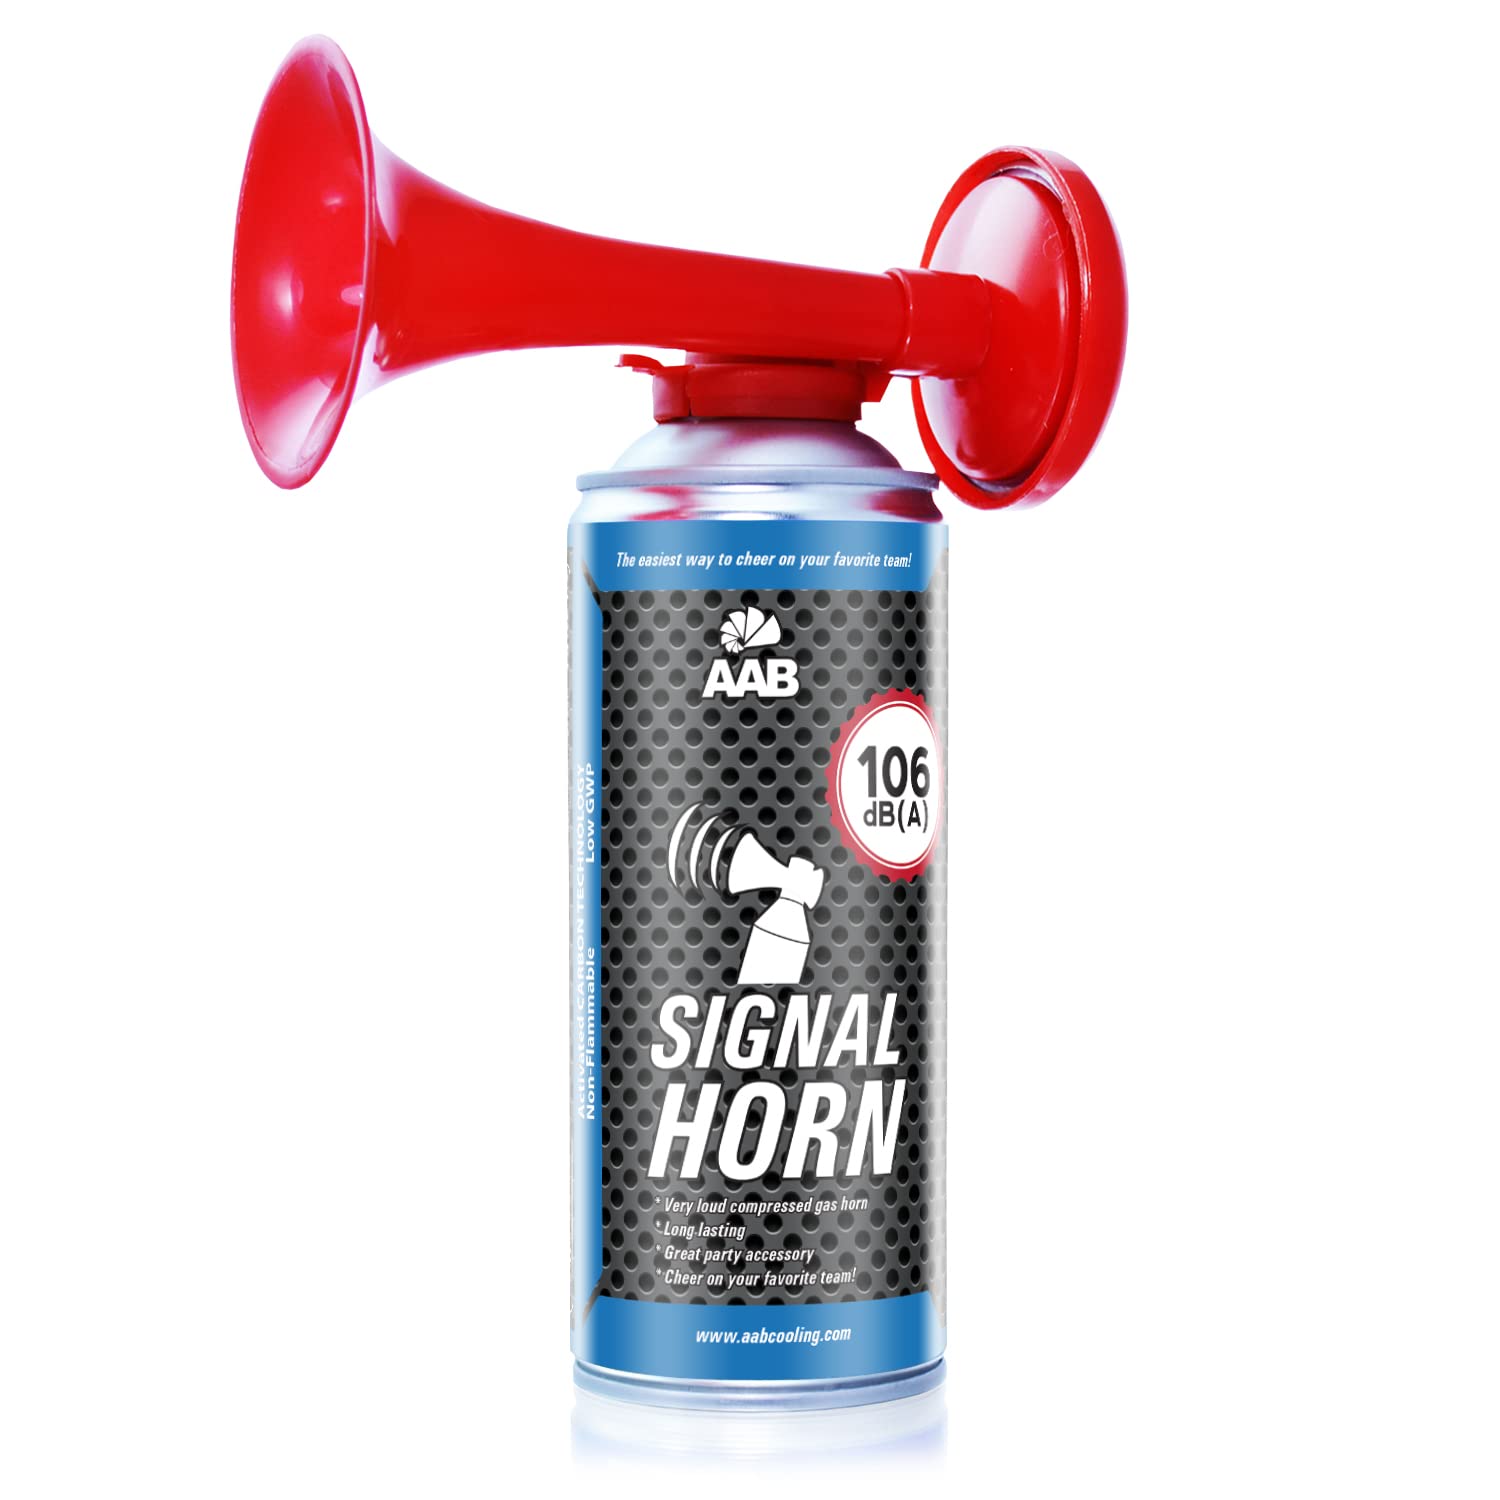 AAB Signal Horn – Laut Nebelhorn 106 dB(A) Mit Nicht Brennbarem Gas, Bis Zu 120 Kurze Pieptöne, Airhorn, Fußball Tröte, Gasfanfare, Pressluft Luftdruck Fanfare, Drucklufthupe, Tröte von AABCOOLING